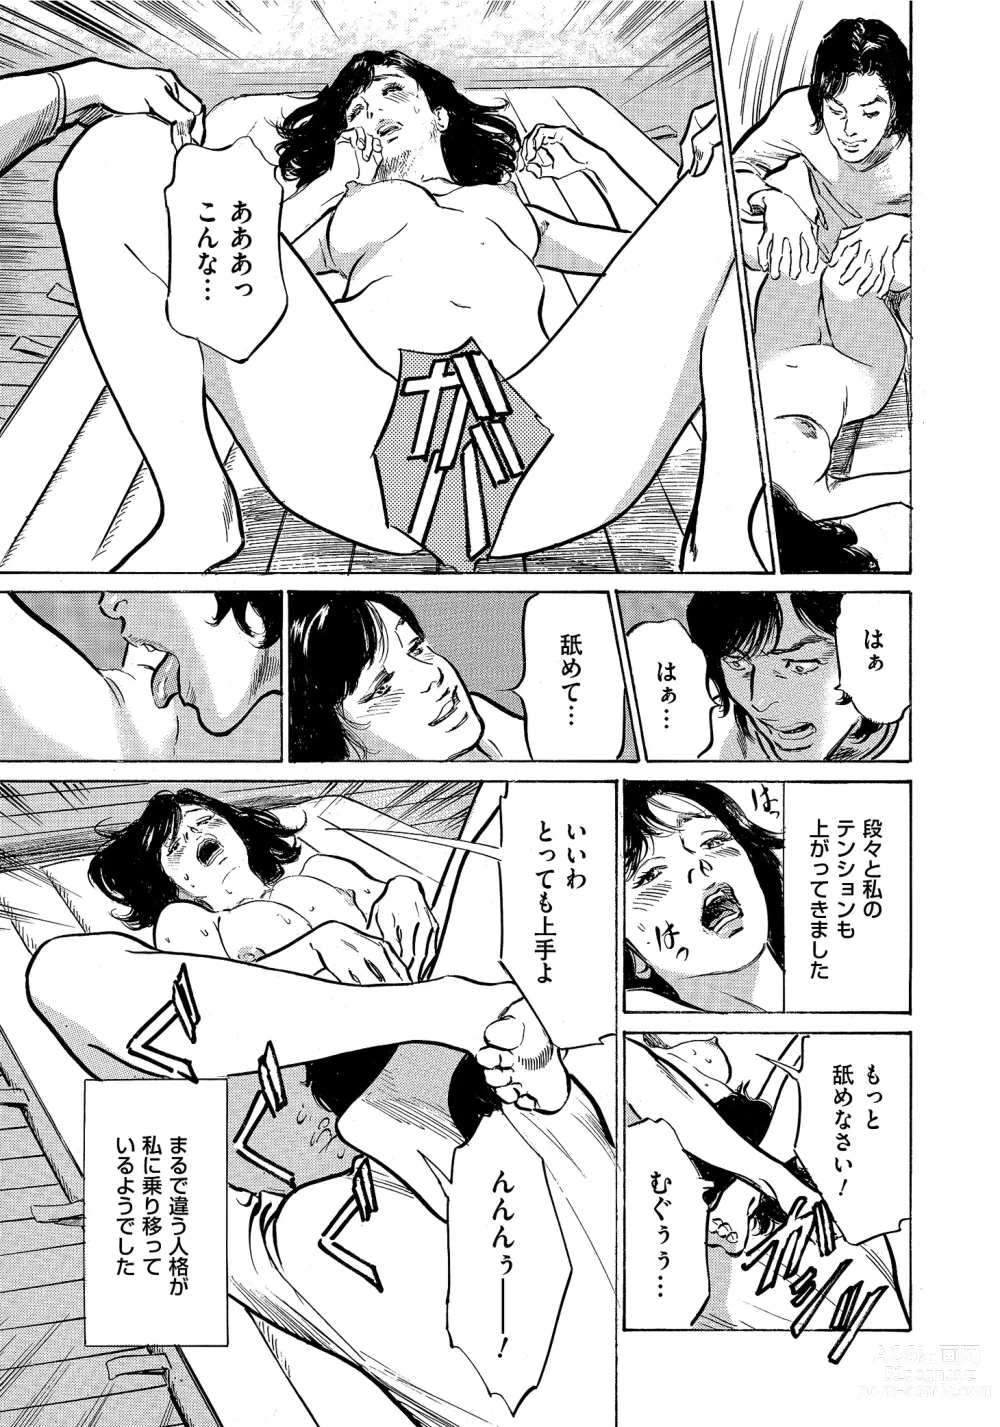 Page 254 of manga Saikou ni Toroketa Honki de Honto no Hanashi 16 episodes